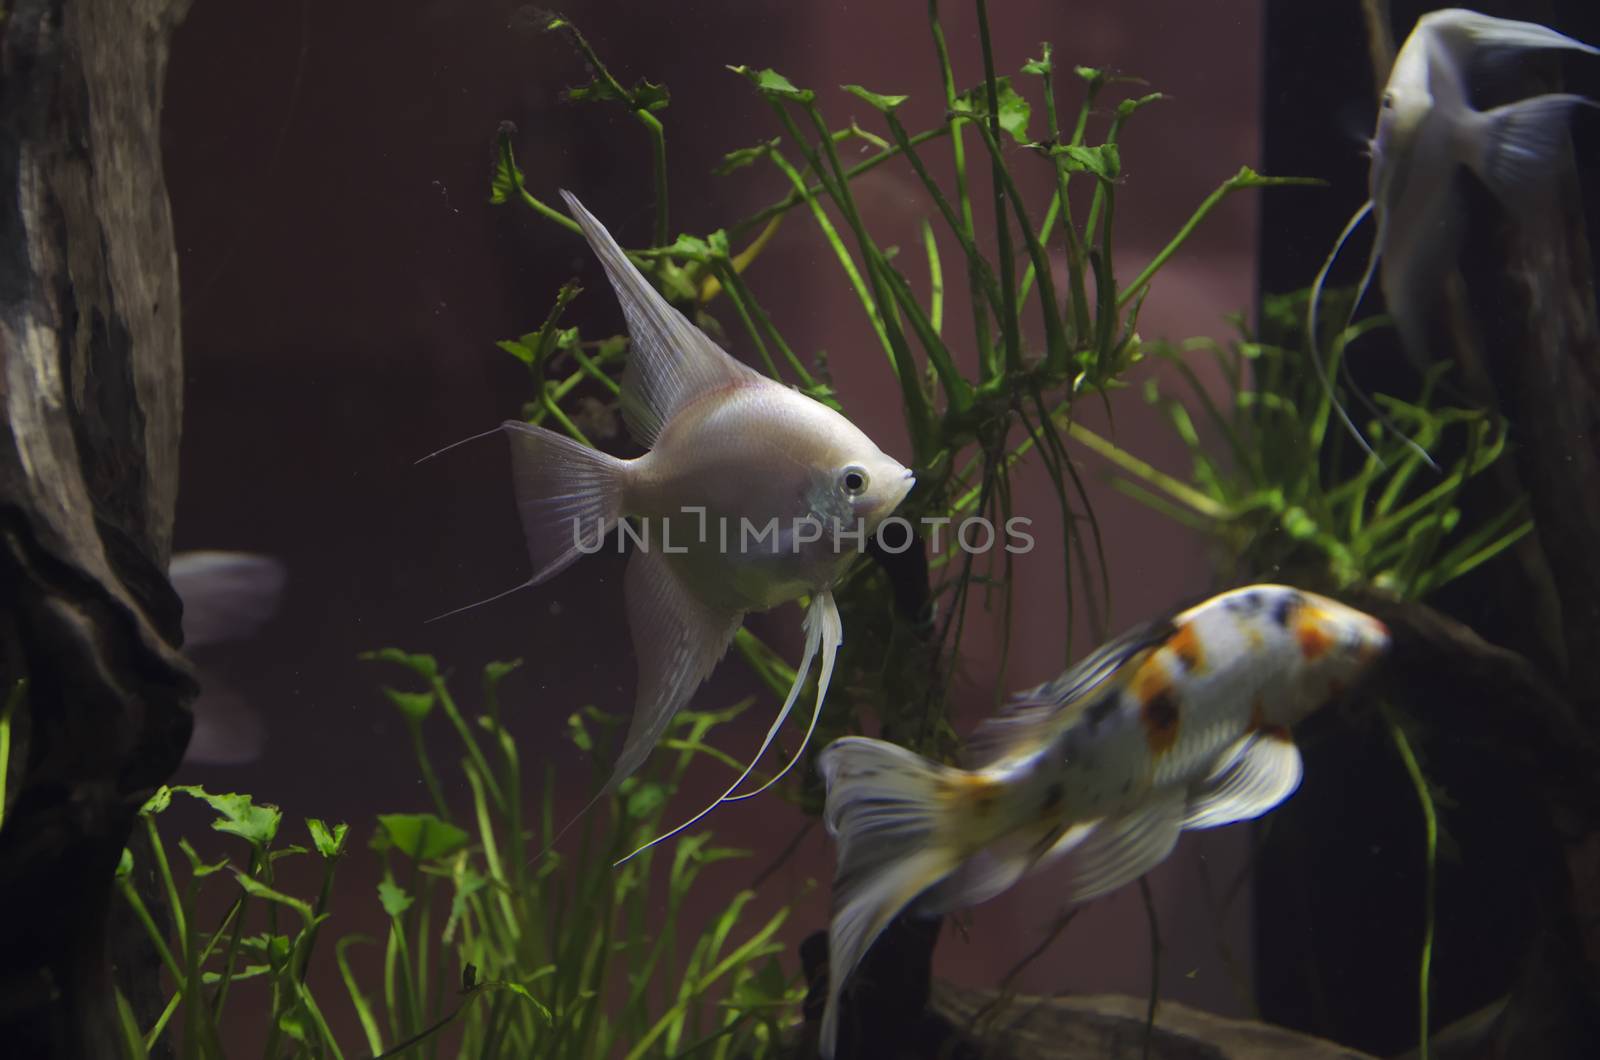 Fish in aquarium by siiixth